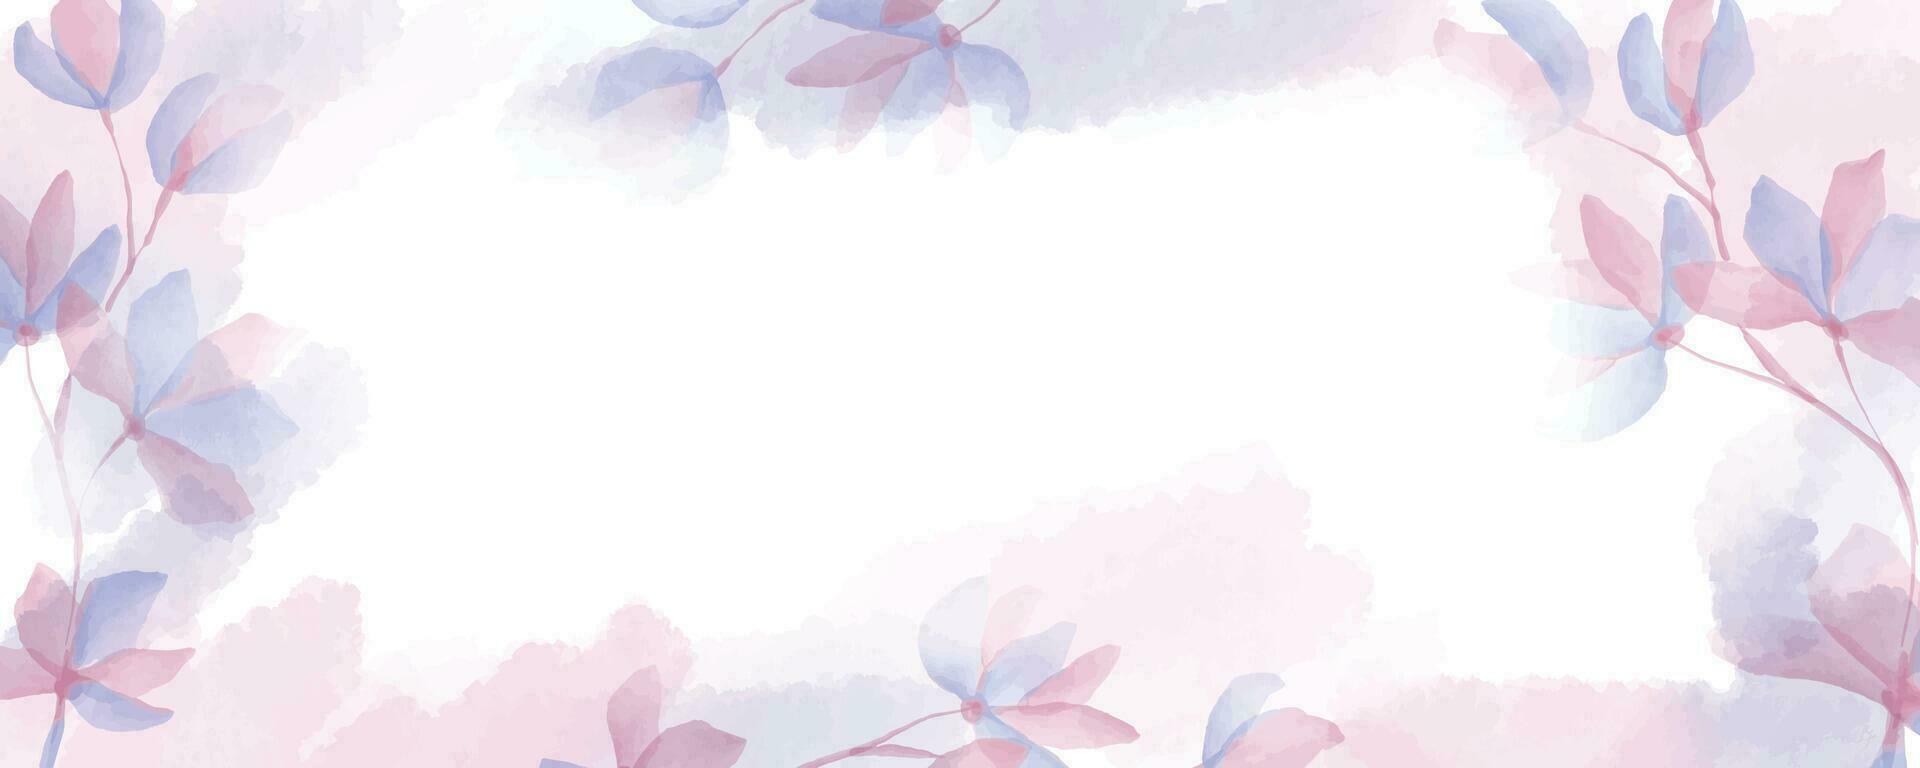 Aquarell Hand gezeichnet und Blume abstrakt Hintergrund vektor